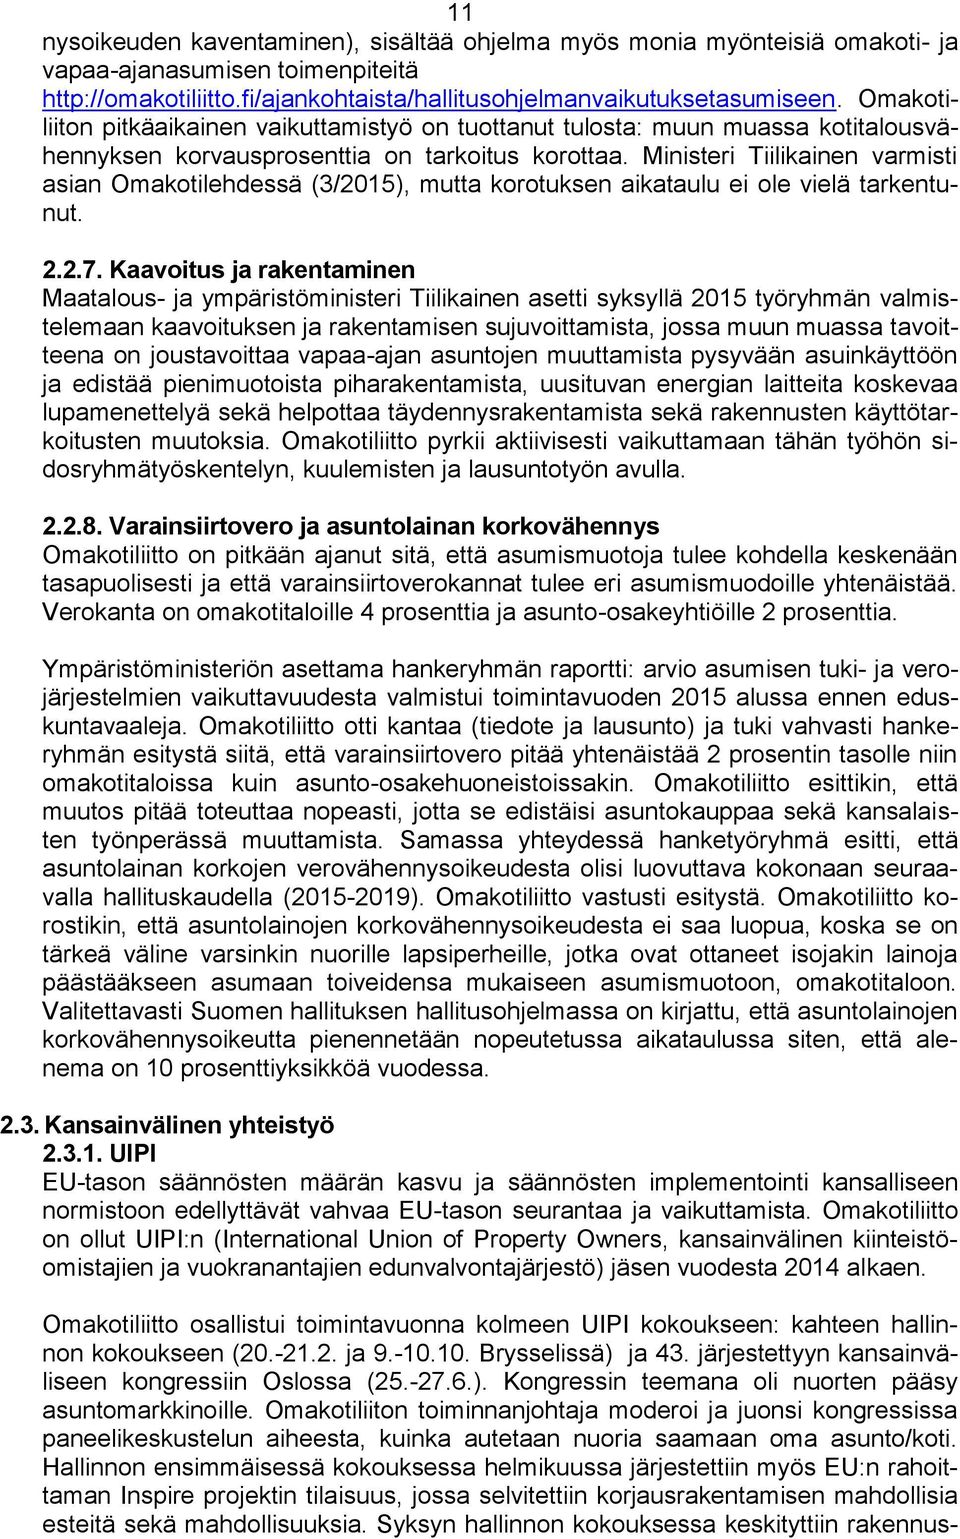 Ministeri Tiilikainen varmisti asian Omakotilehdessä (3/2015), mutta korotuksen aikataulu ei ole vielä tarkentunut. 2.2.7.